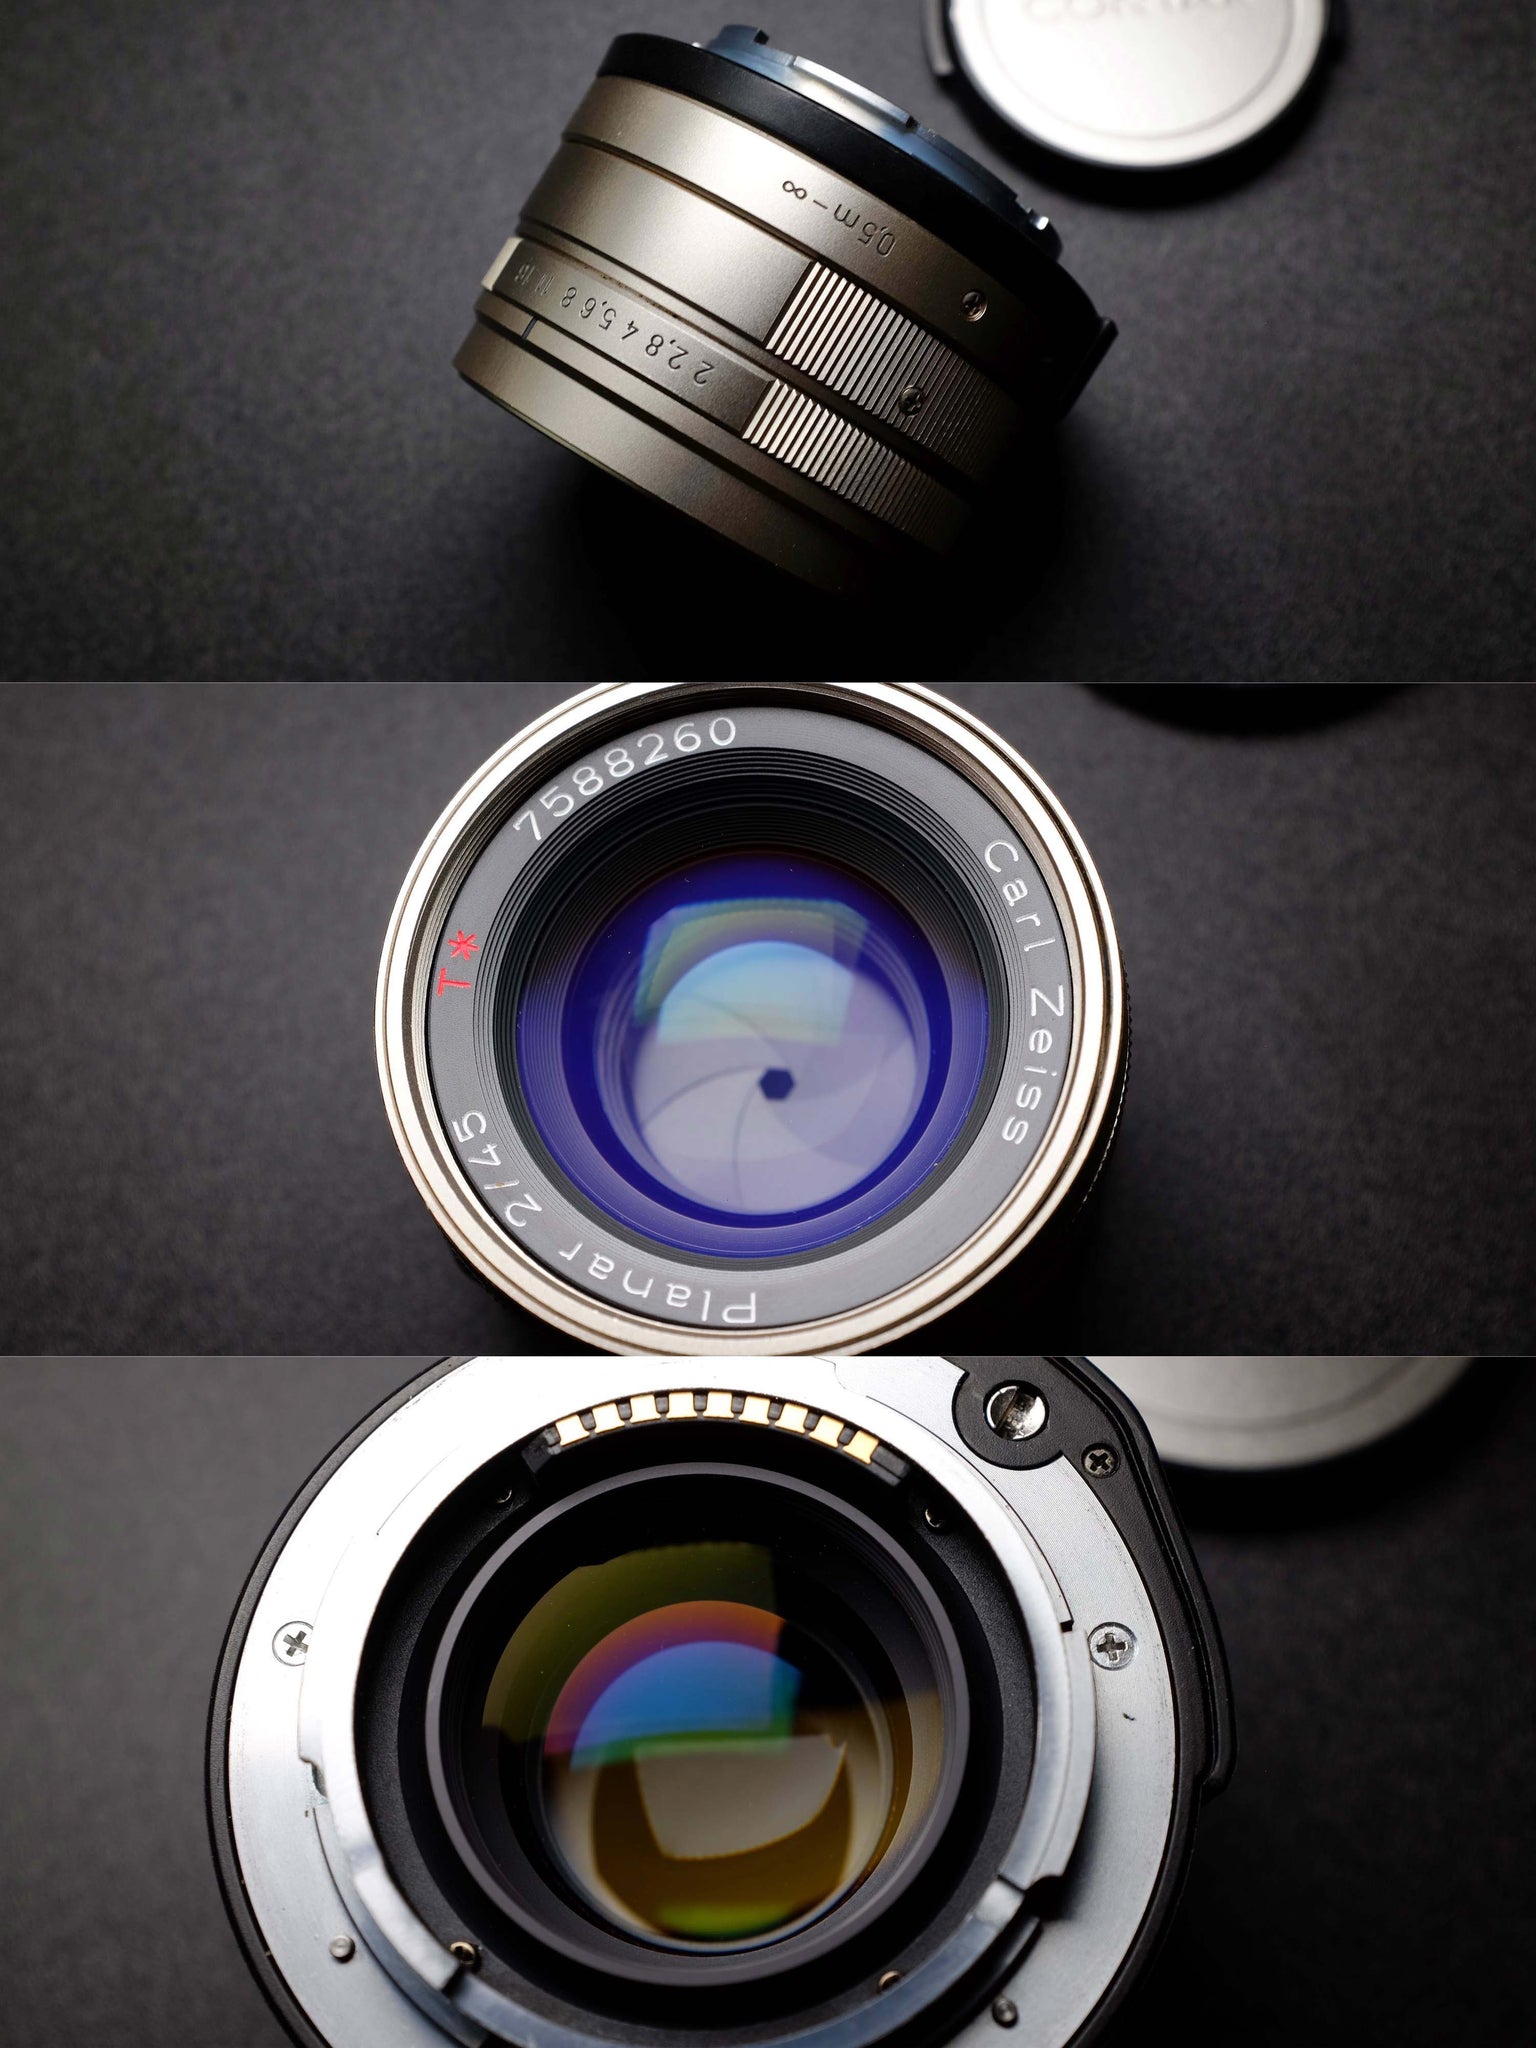 Carl Zeiss Planar 45mm F2 ライカ Mマウント - カメラ